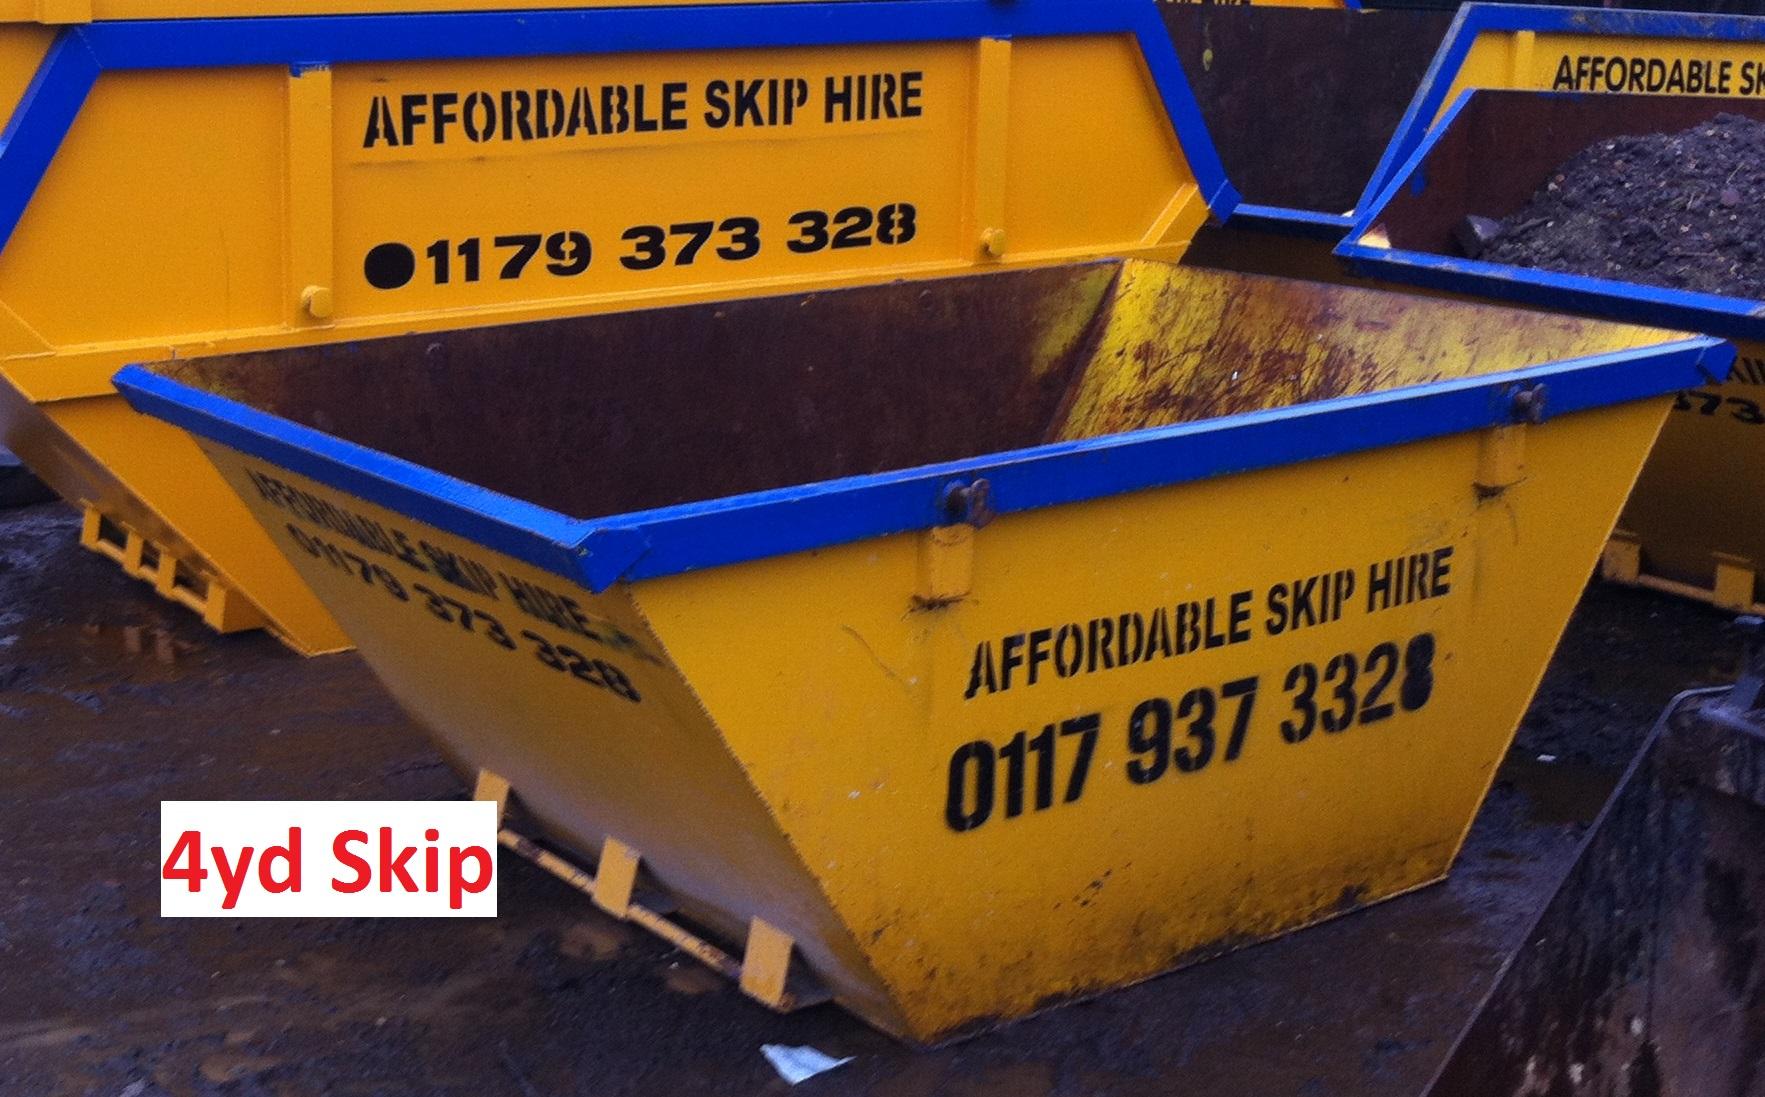 Affordable Skip Hire Bristol Ltd Bristol 01179 373328